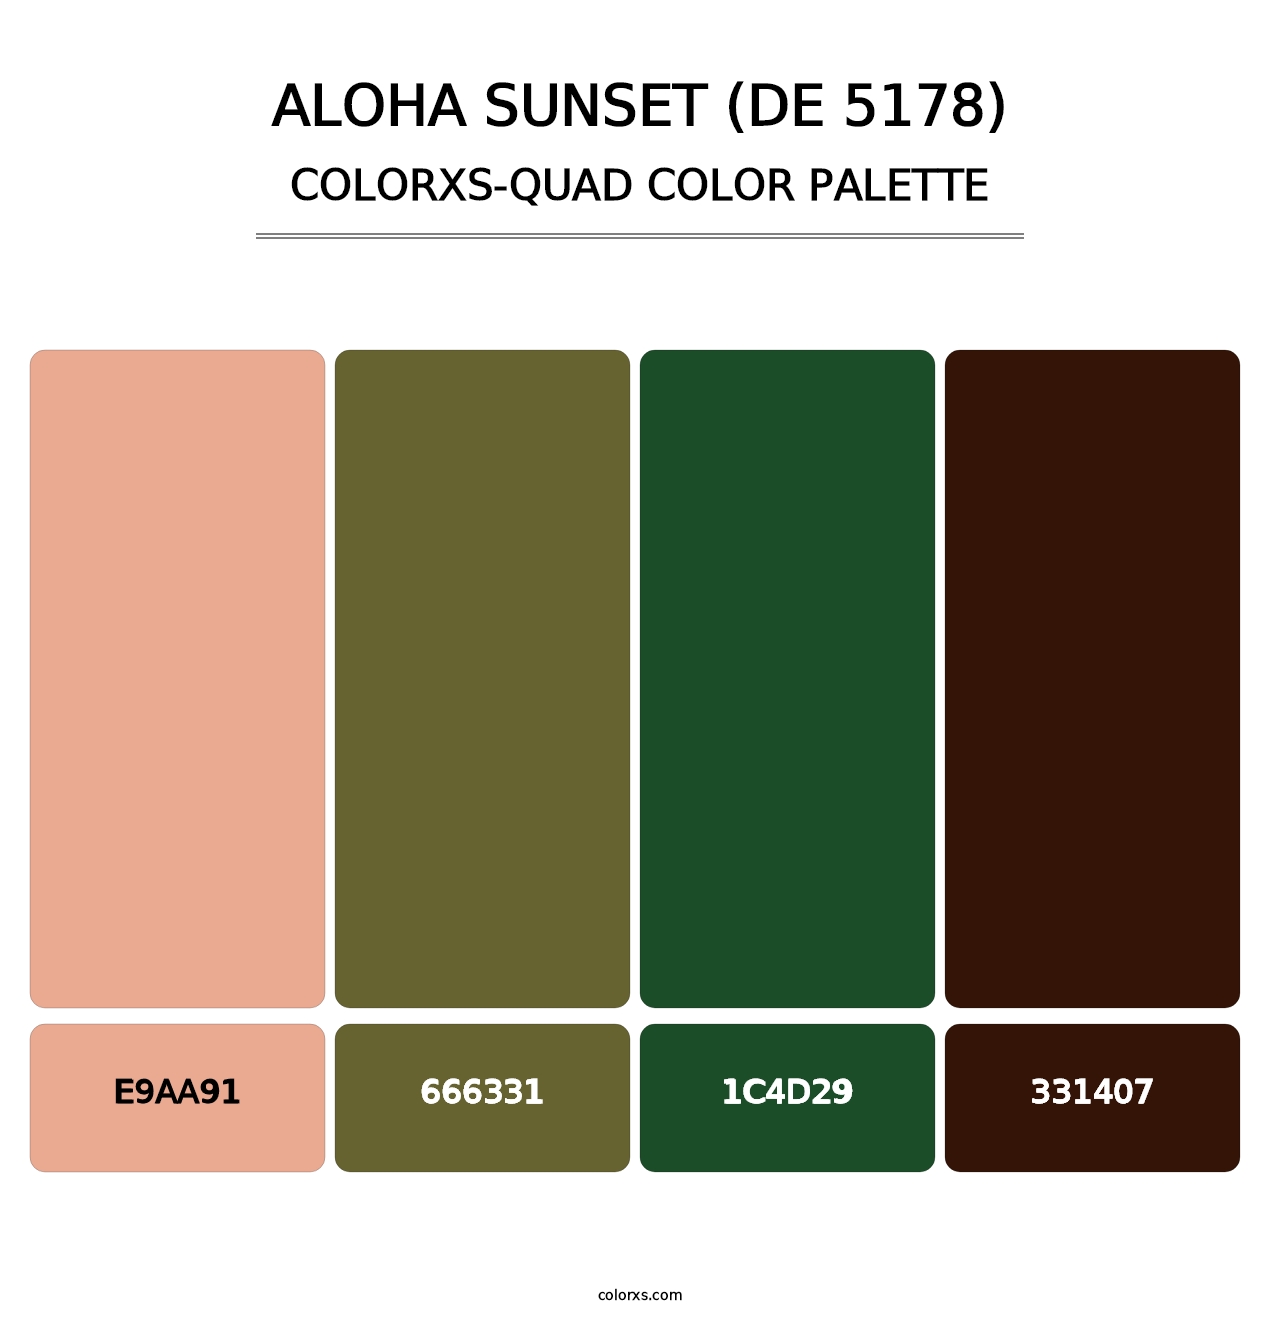 Aloha Sunset (DE 5178) - Colorxs Quad Palette